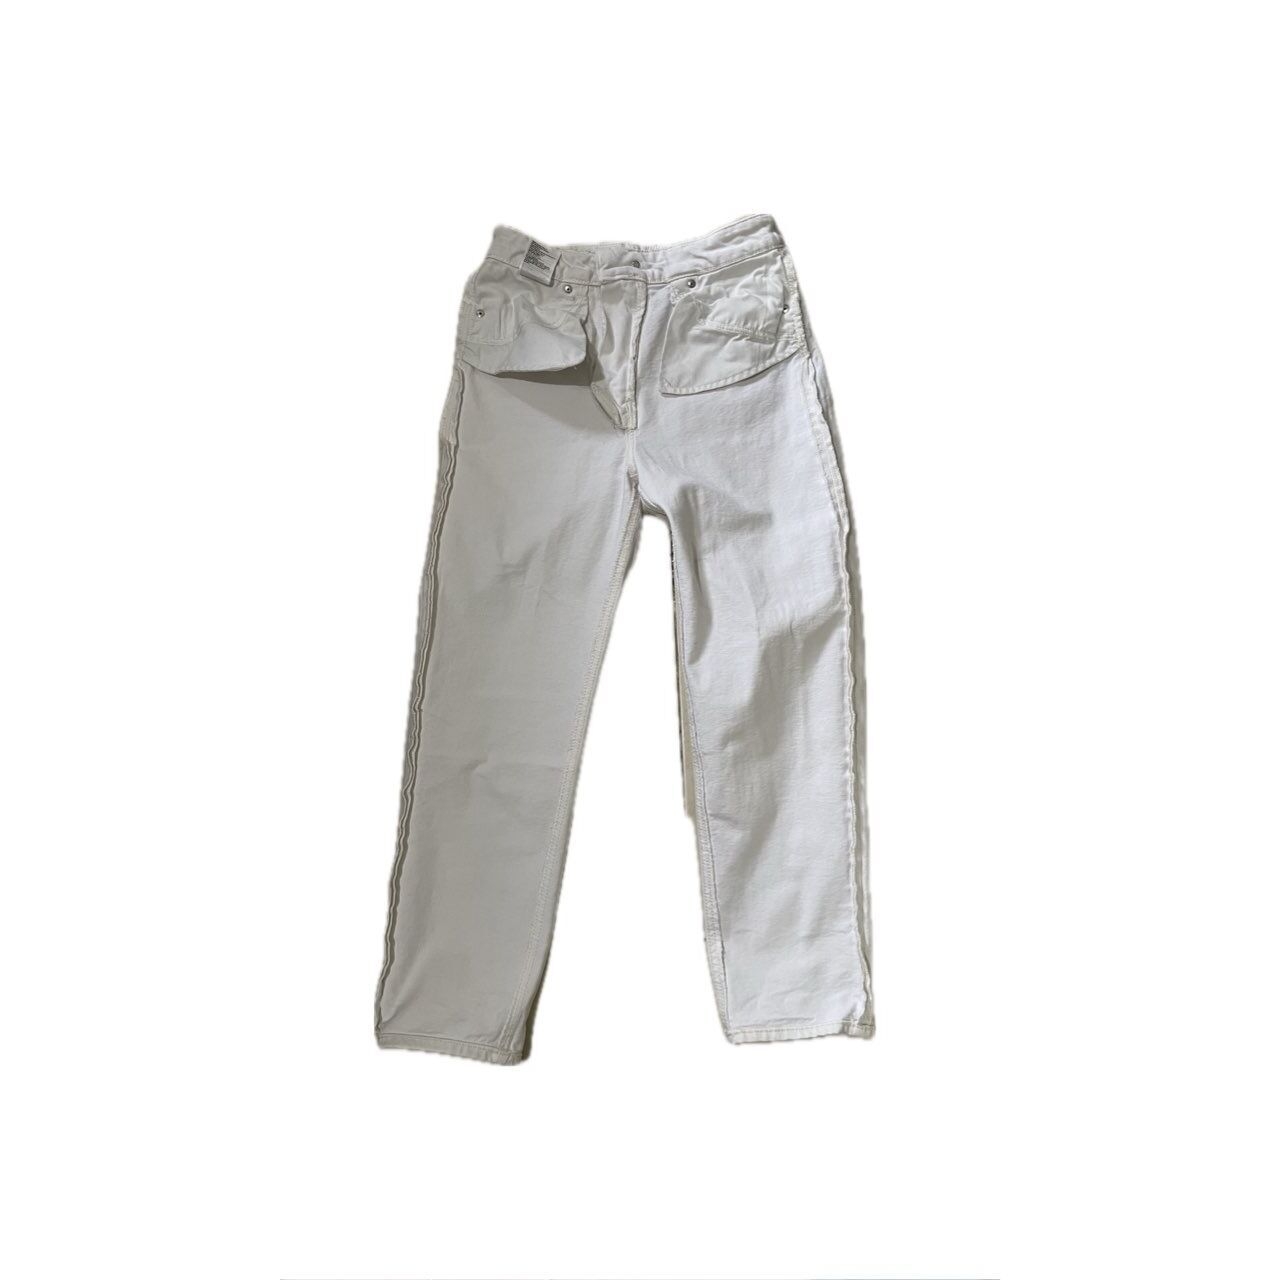 H&M Beige Long Pants